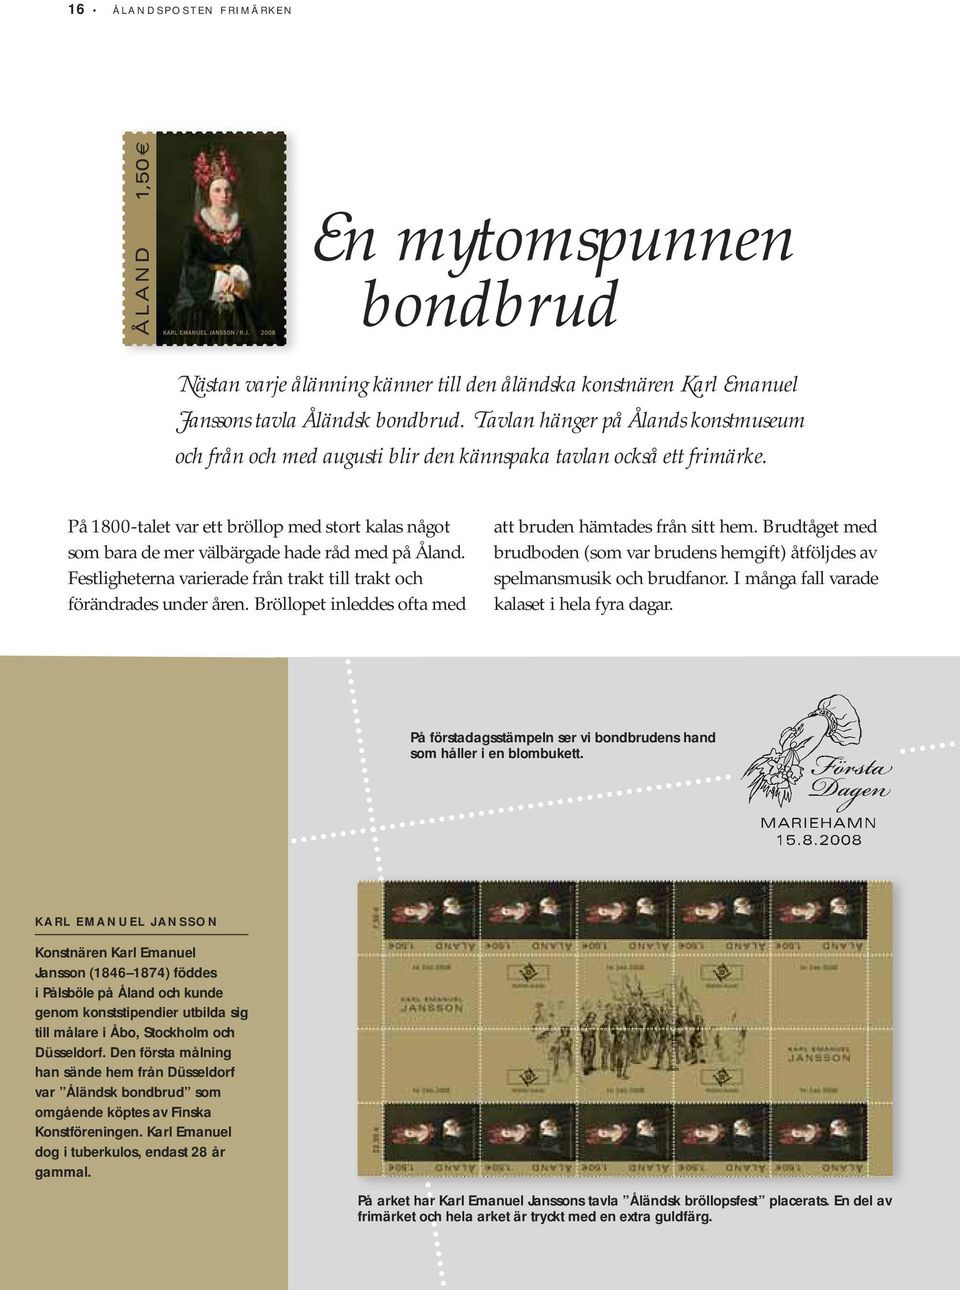 På 1800-talet var ett bröllop med stort kalas något som bara de mer välbärgade hade råd med på Åland. Festligheterna varierade från trakt till trakt och förändrades under åren.